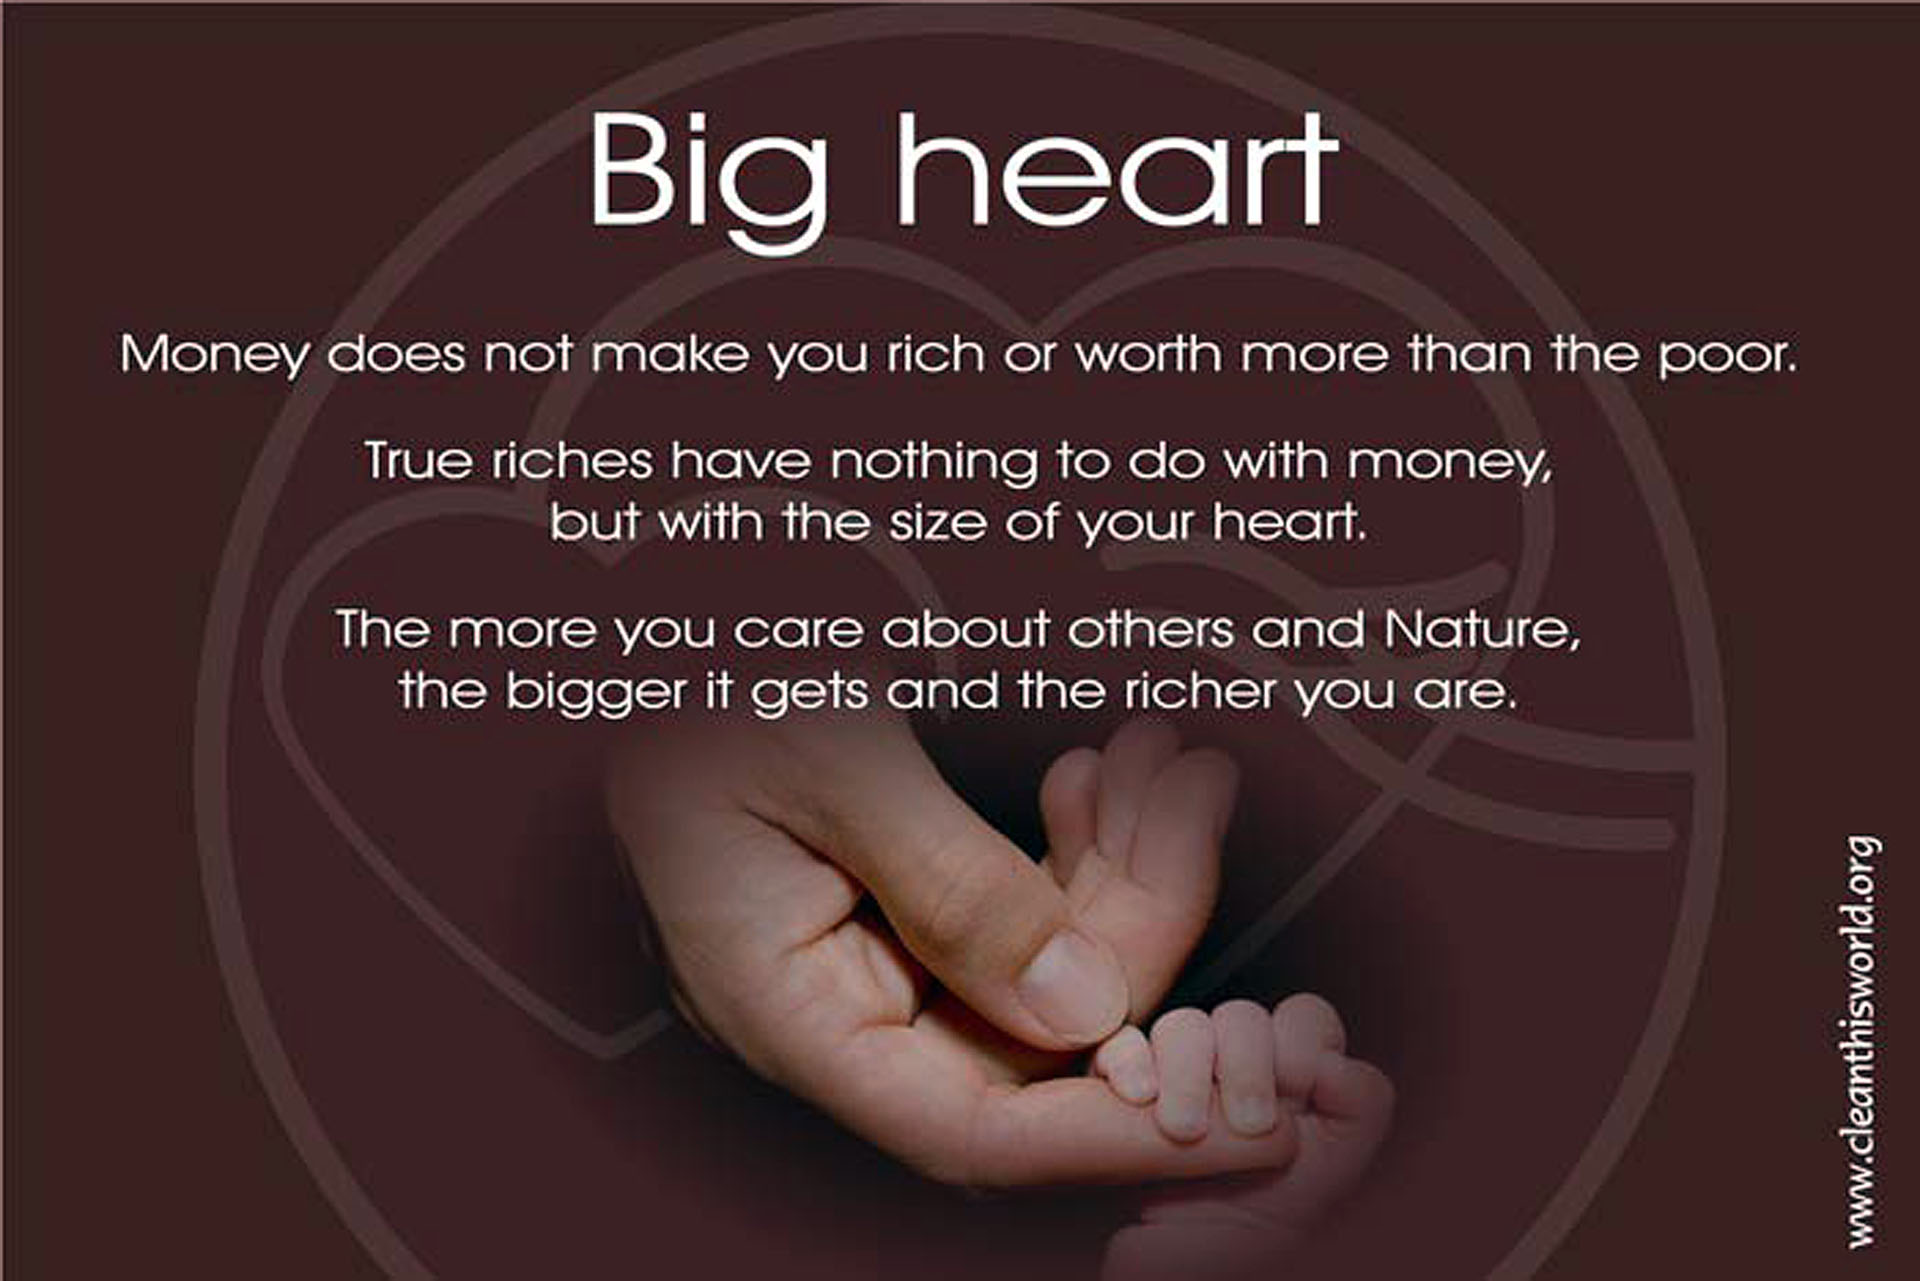 Big heart